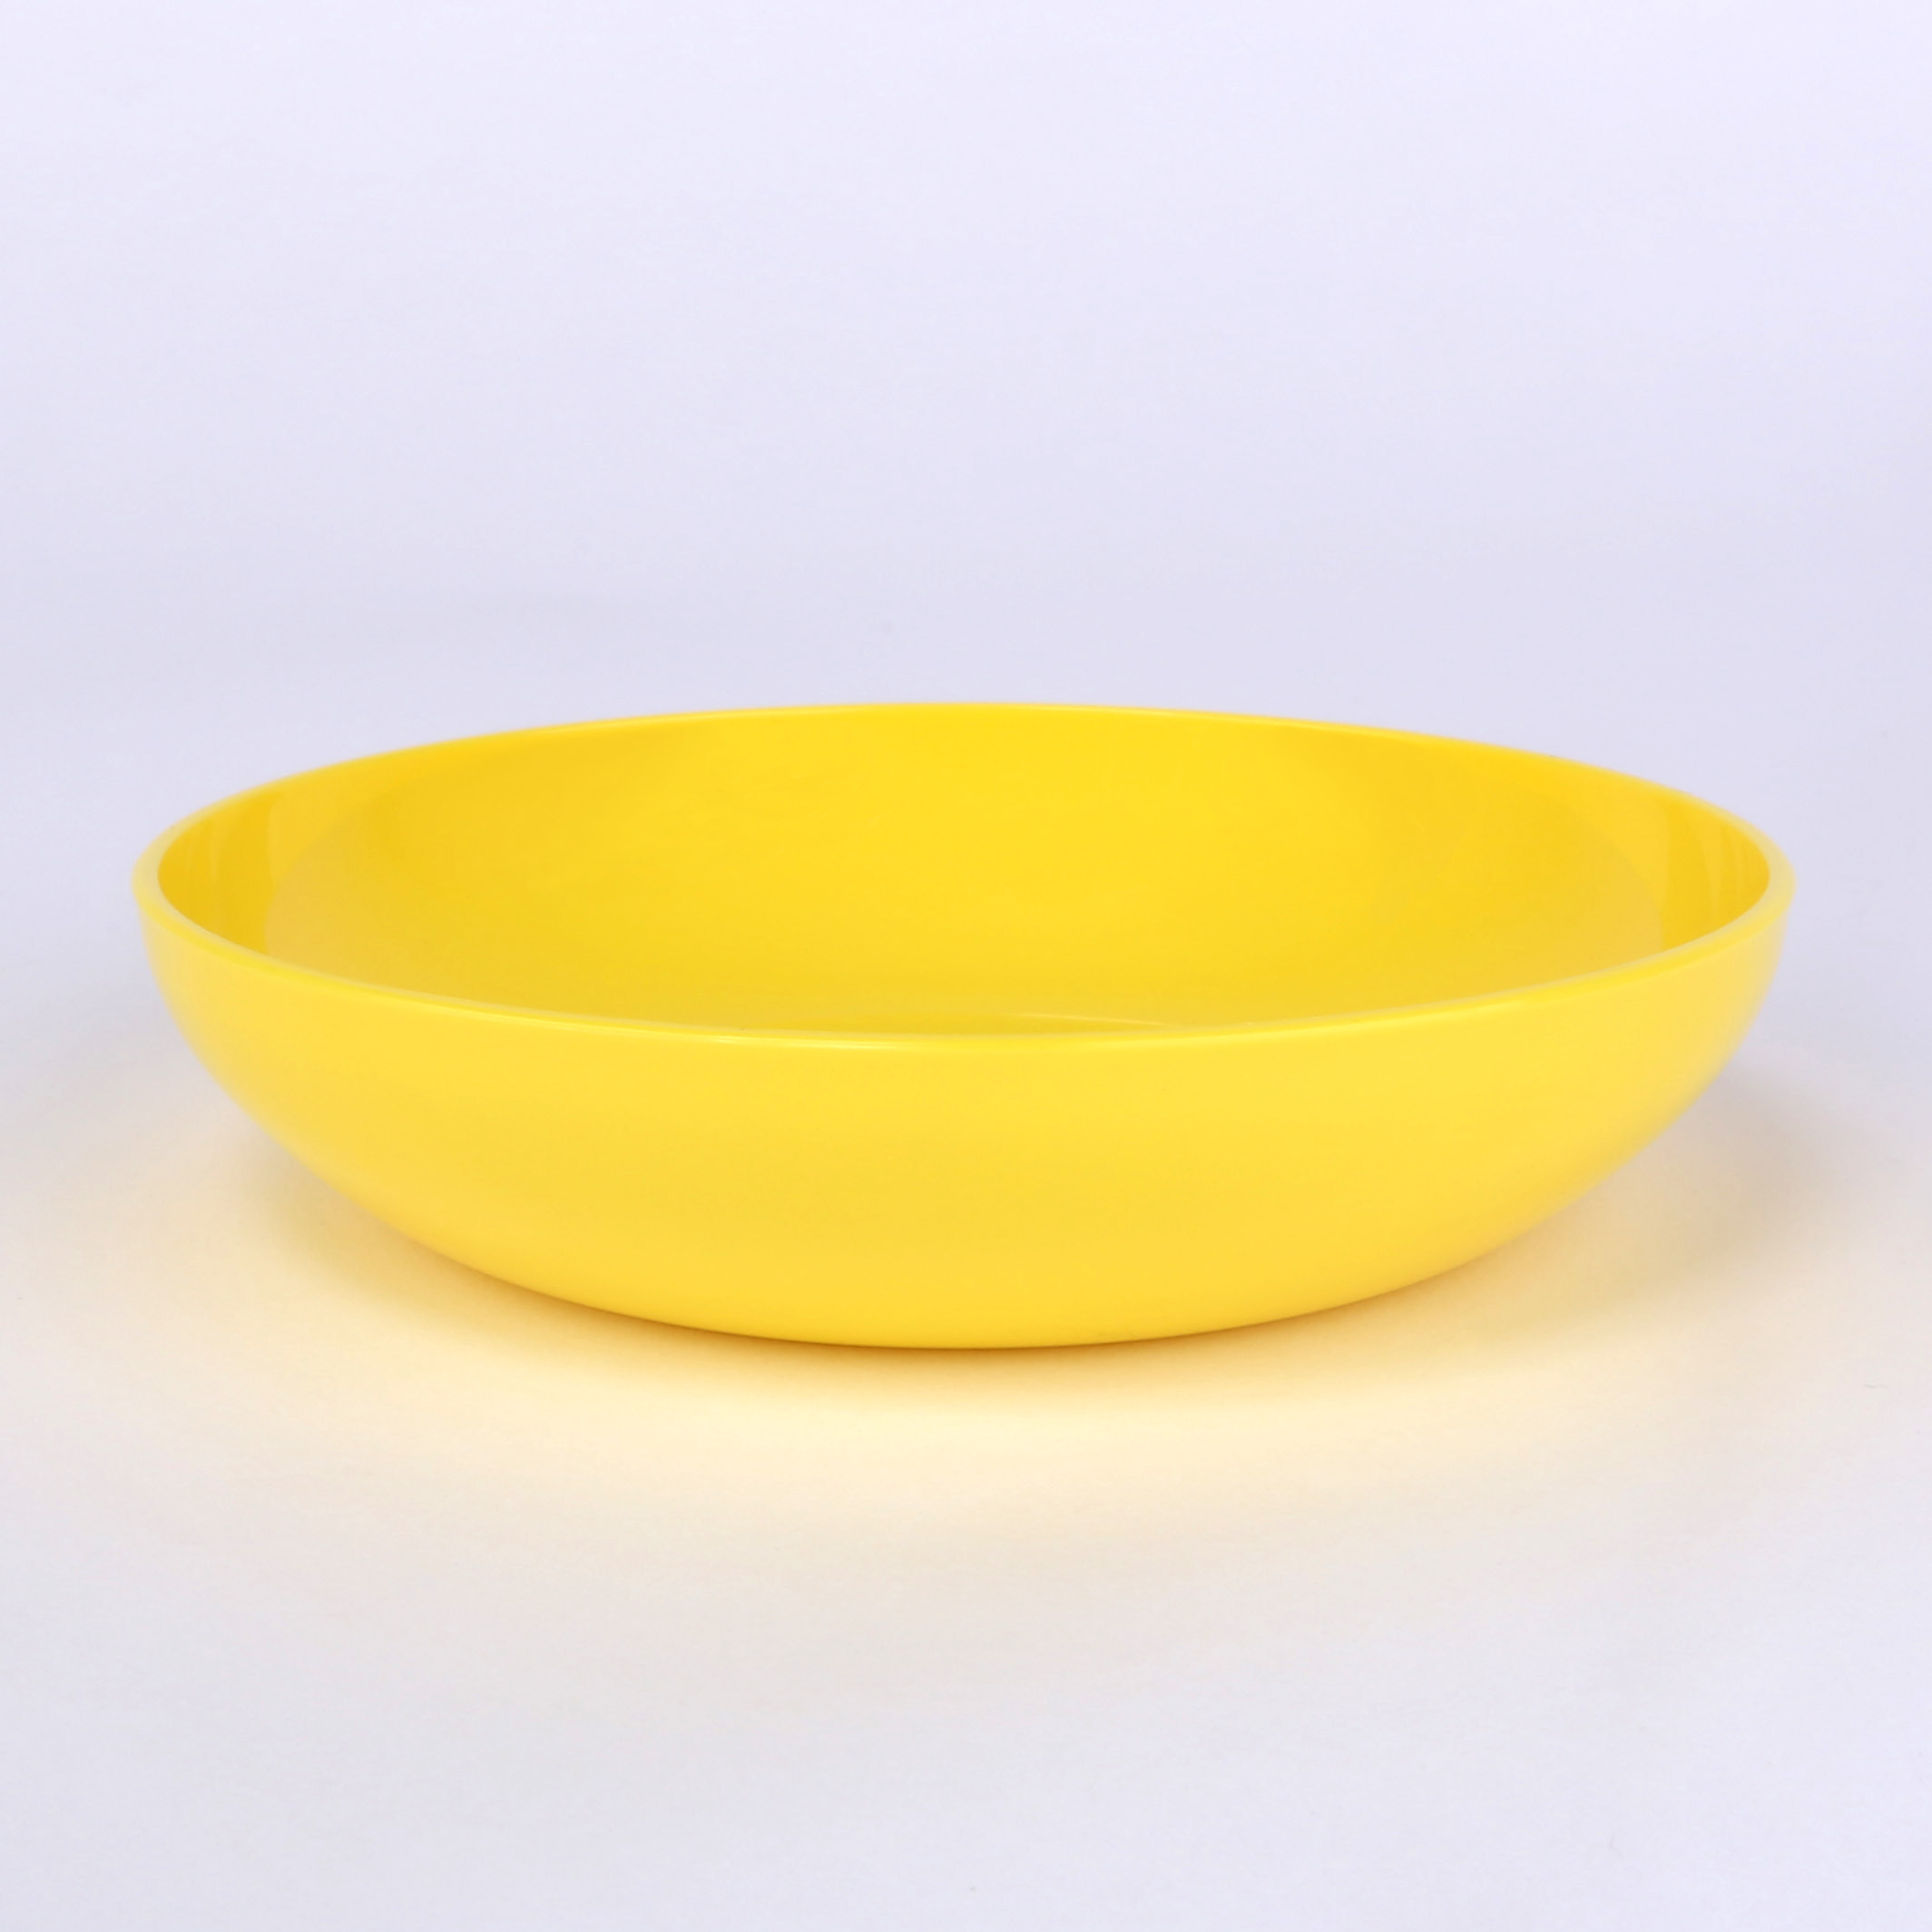 vaLon Zephyr Flache Dessertschale 13,5 cm aus schadstofffreiem Kunststoff in der Farbe sonnengelb.